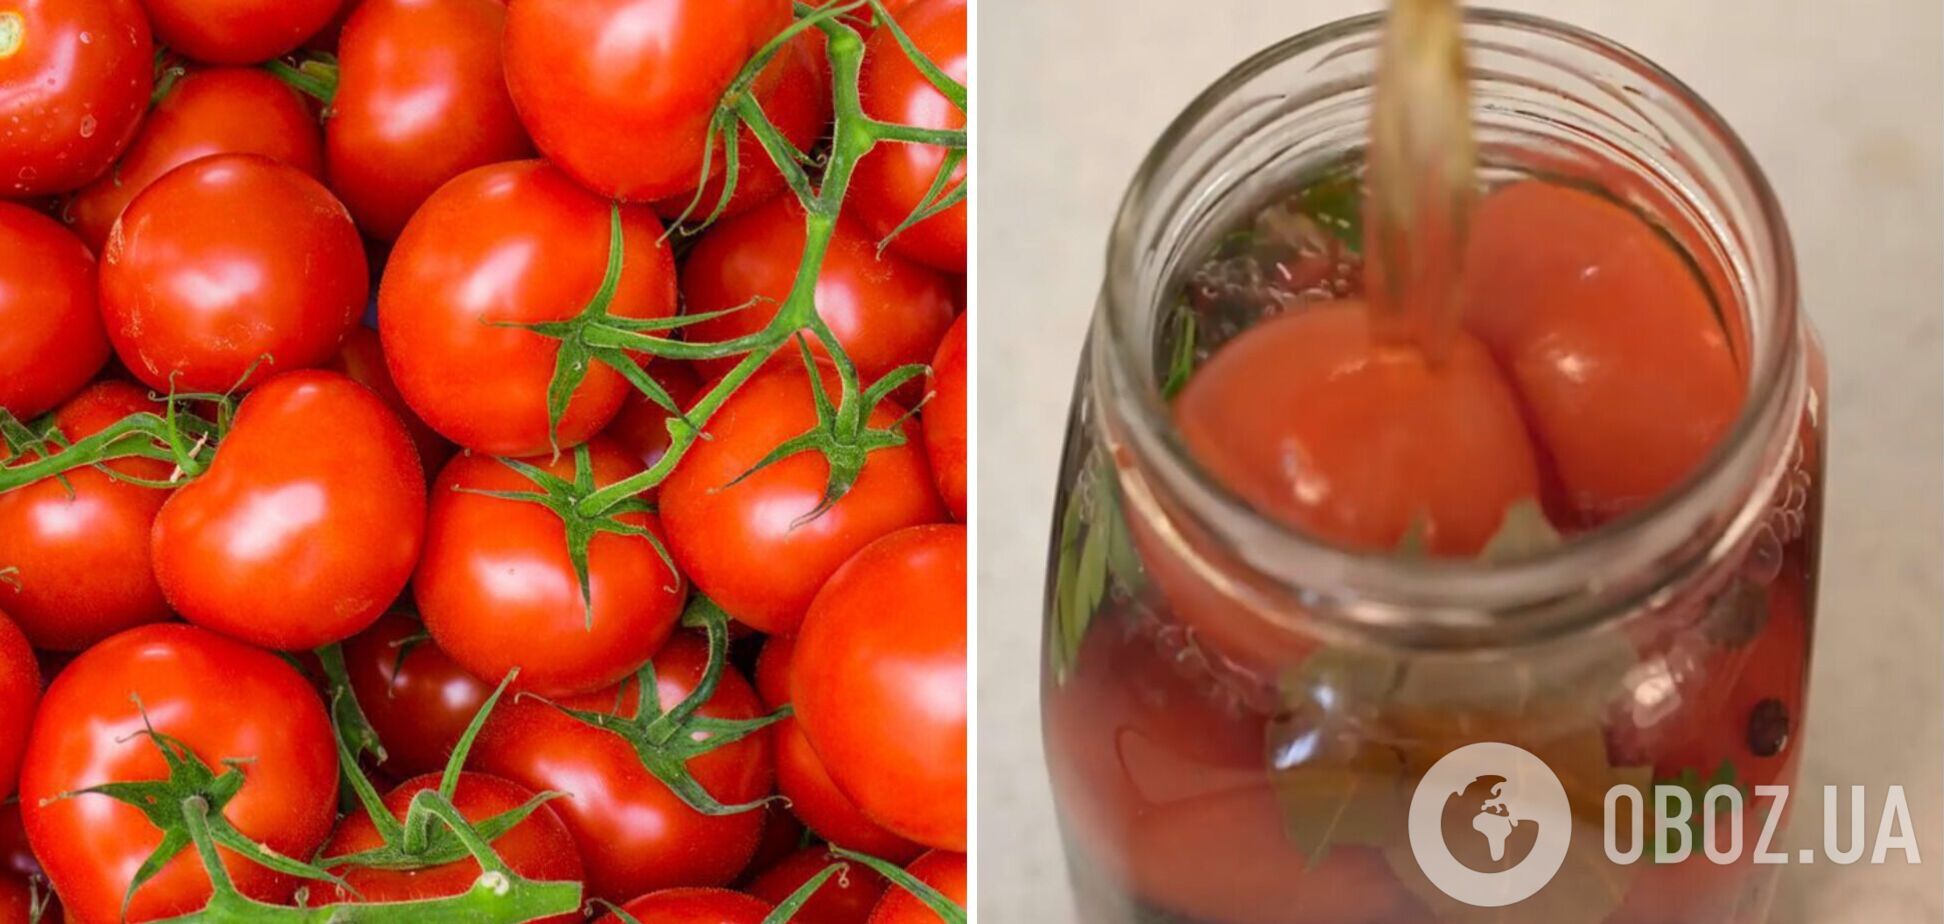 Мариновані помідори з секретним інгредієнтом, що підсилює смак томатів